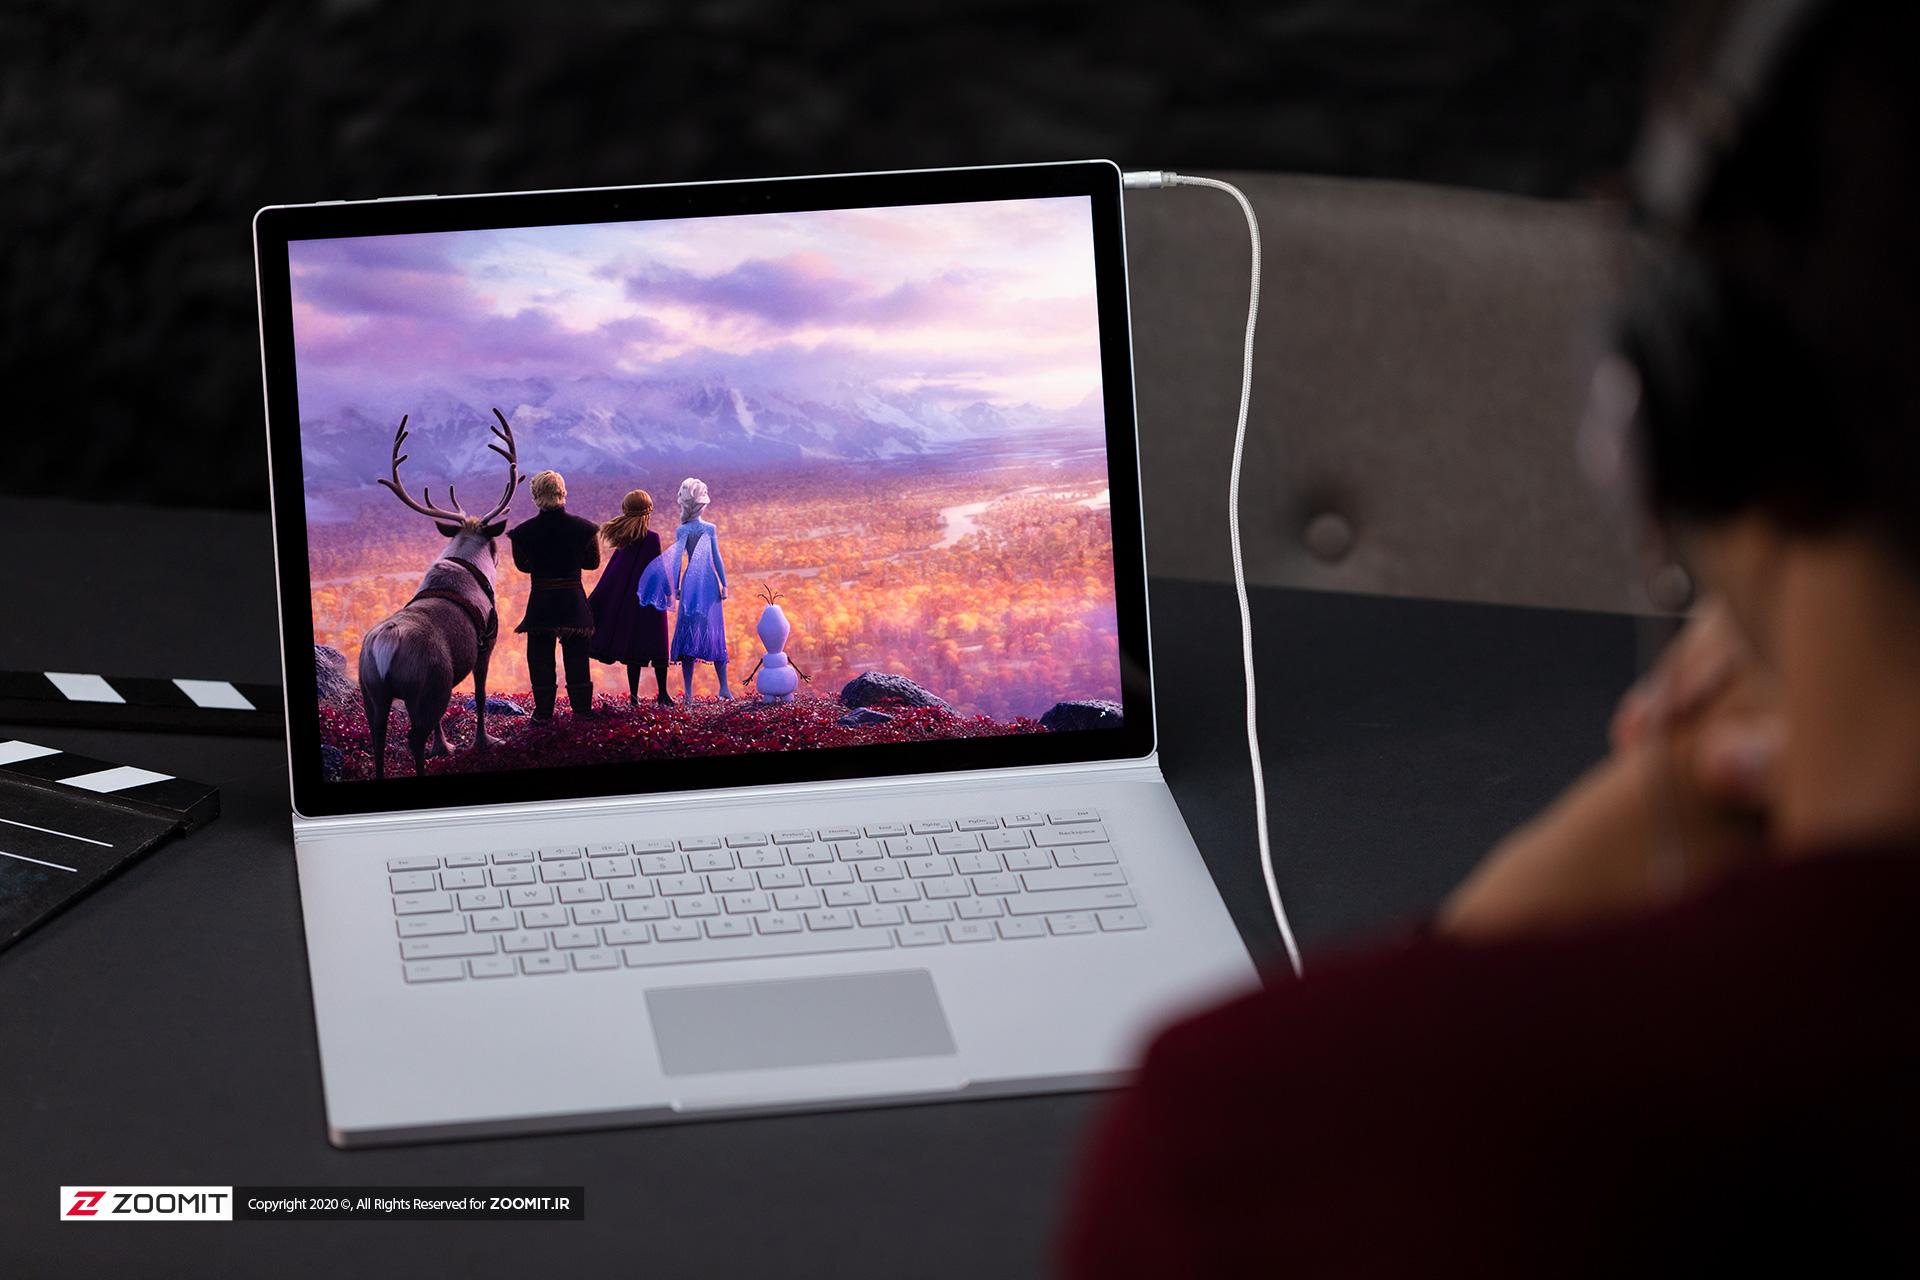 سرفیس بوک ۳ مایکروسافت / Microsoft Surface Book 3 در حال پخش فیلم